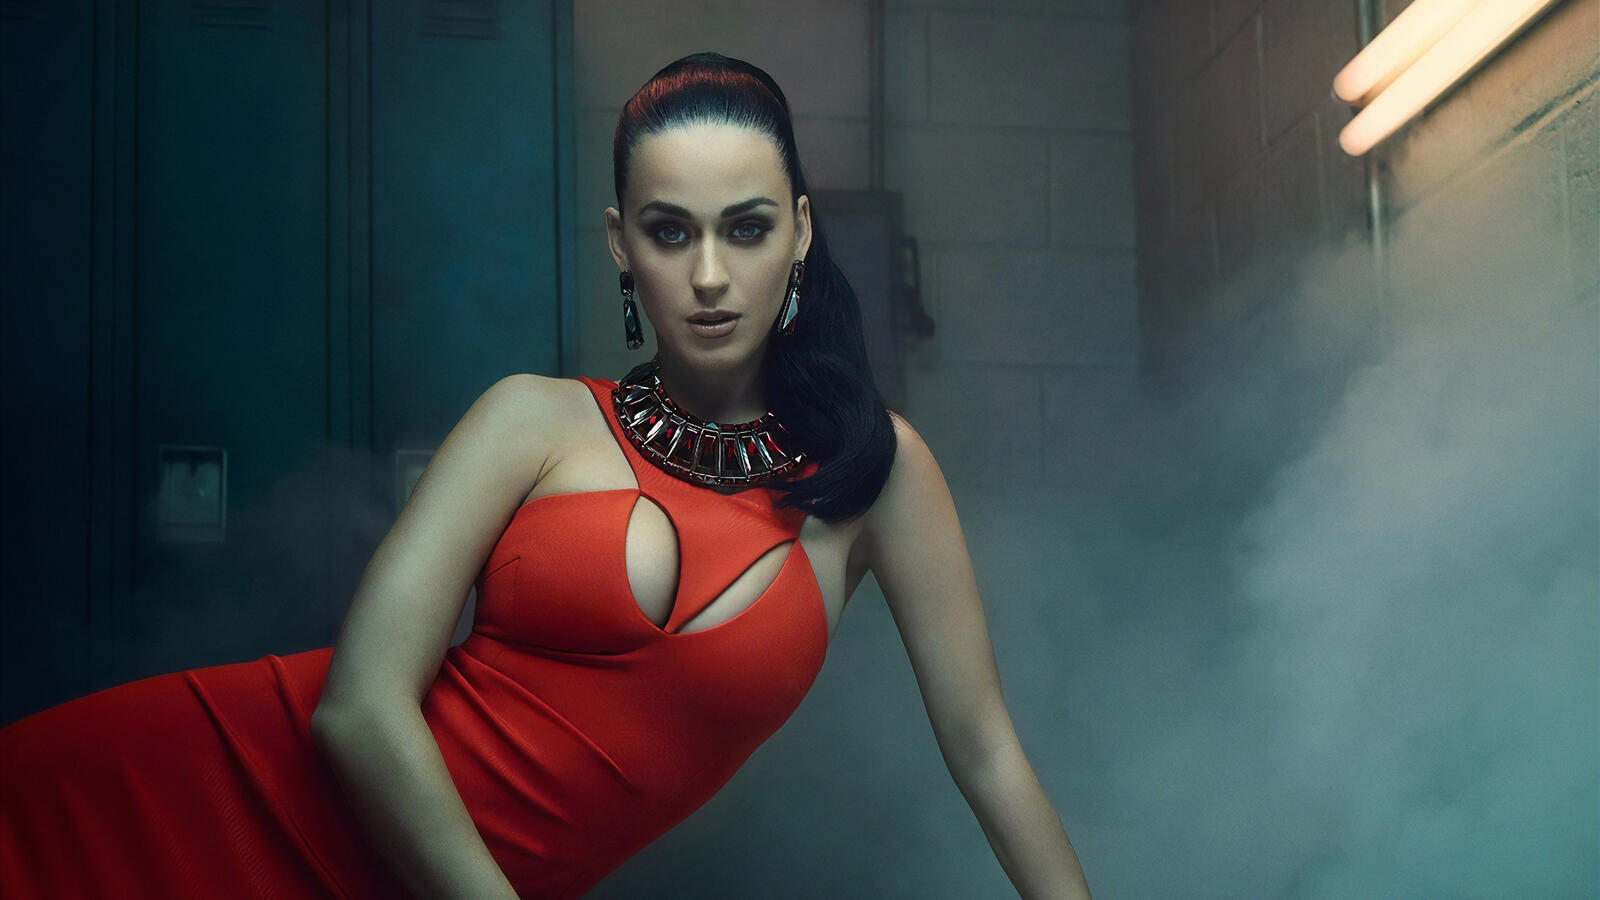 Обои Katy Perry знаменитость музыка на рабочий стол